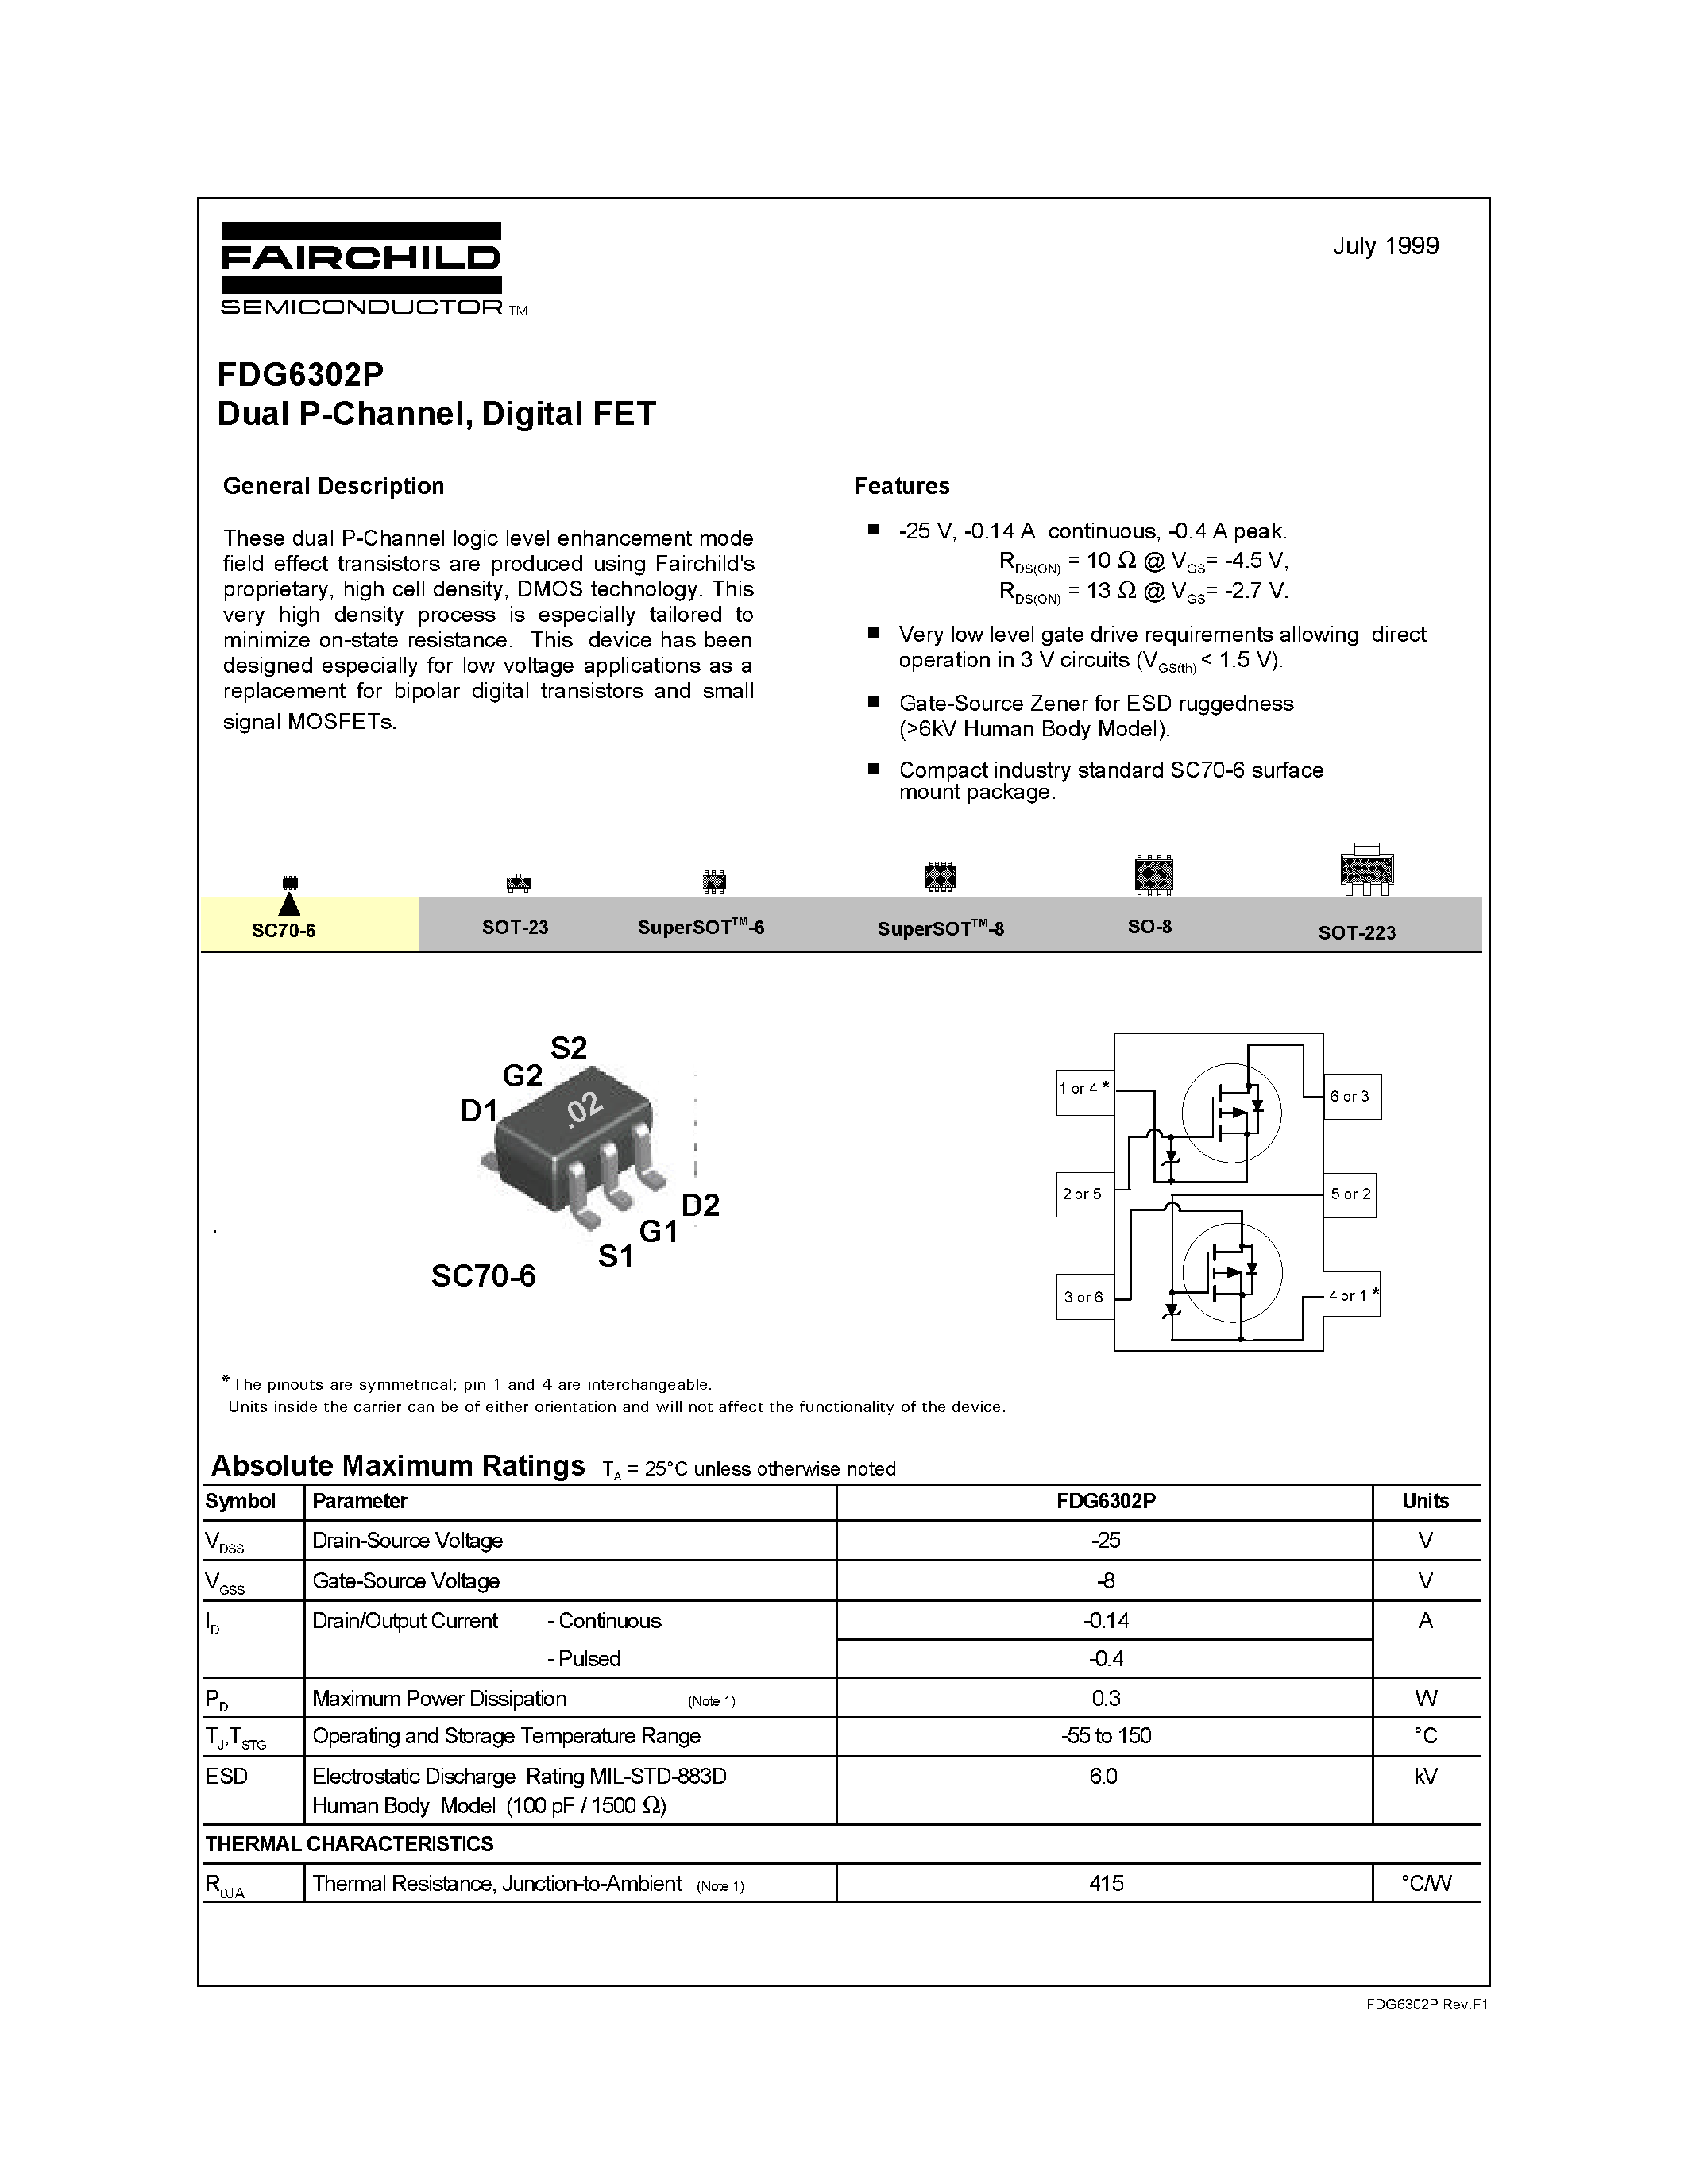 Datasheet FDG6302P - Dual P-Channel/ Digital FET page 1